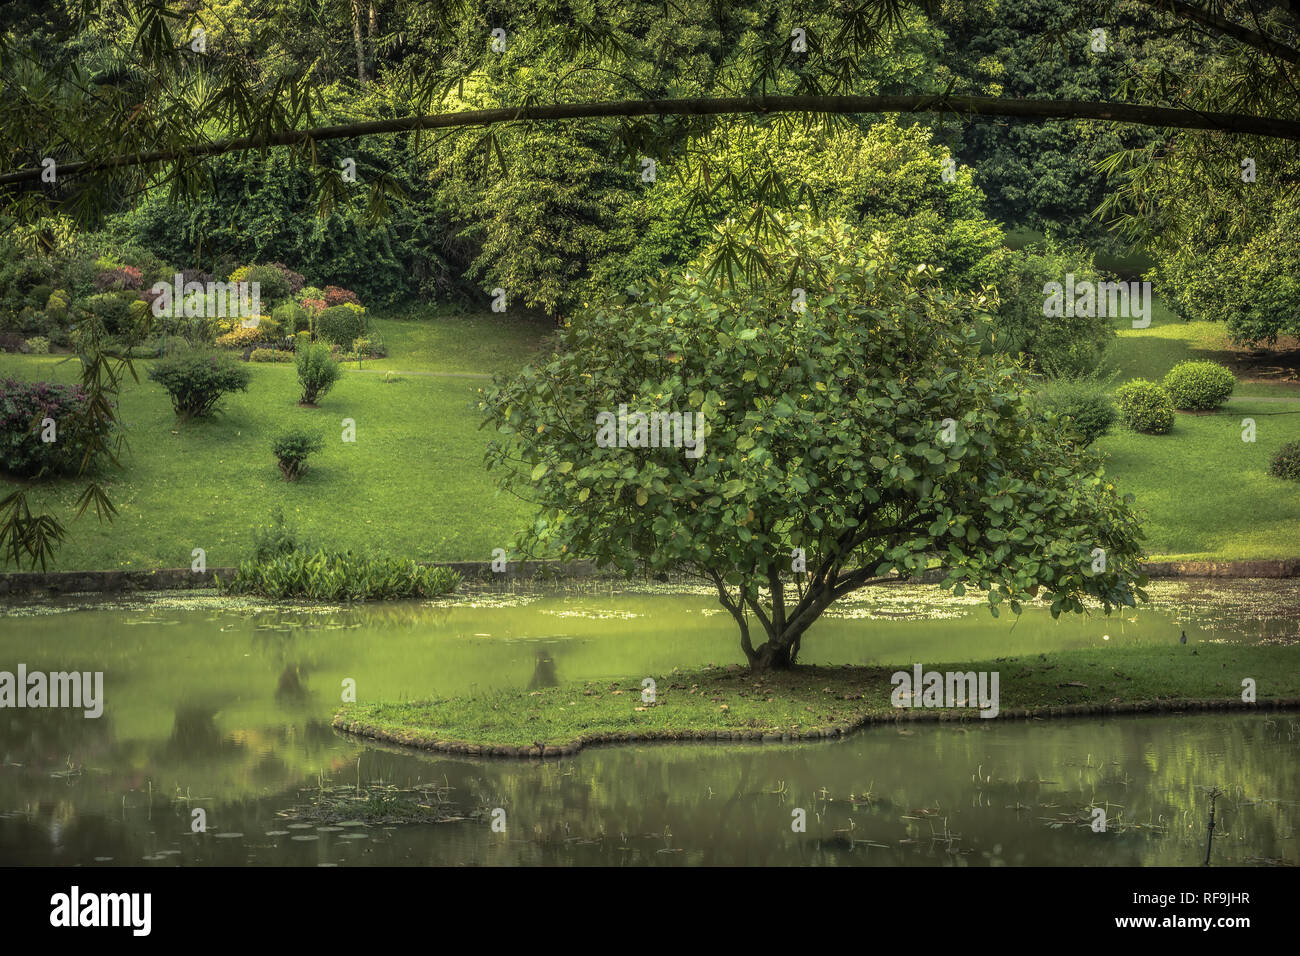 Jardin du parc public avec la conception de paysage dans la région de Royal Garden au Sri Lanka Peradeniya Kandy environs Environs Banque D'Images